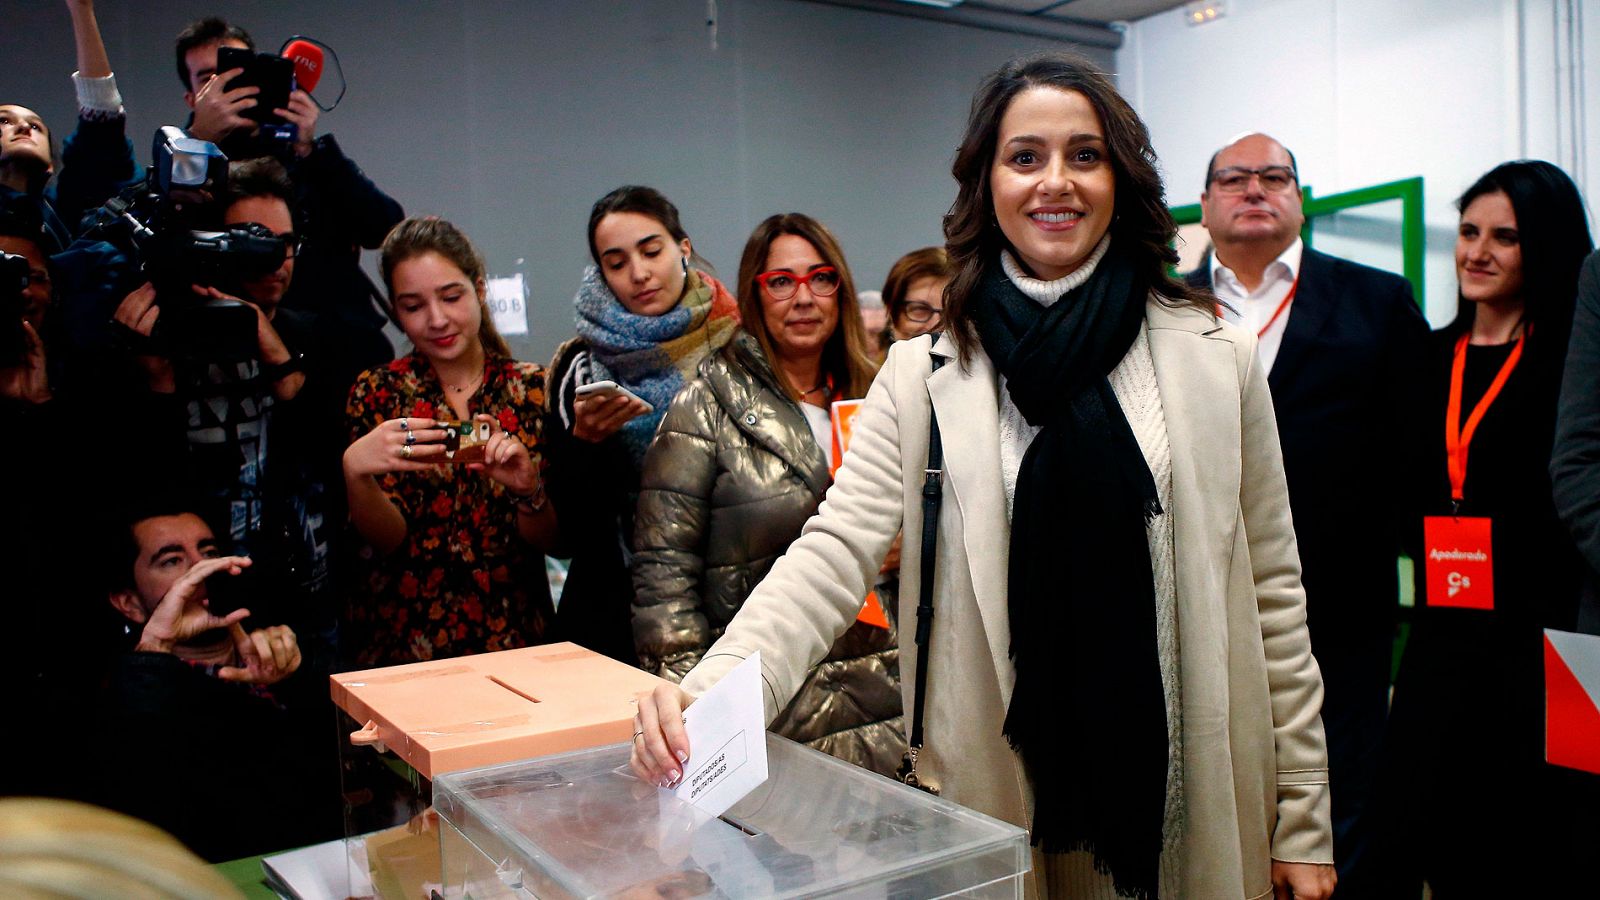 Elecciones generales: Arrimadas, increpada por varias personas en el colegio electoral que la llaman "fascista" y "facha" - RTVE.es